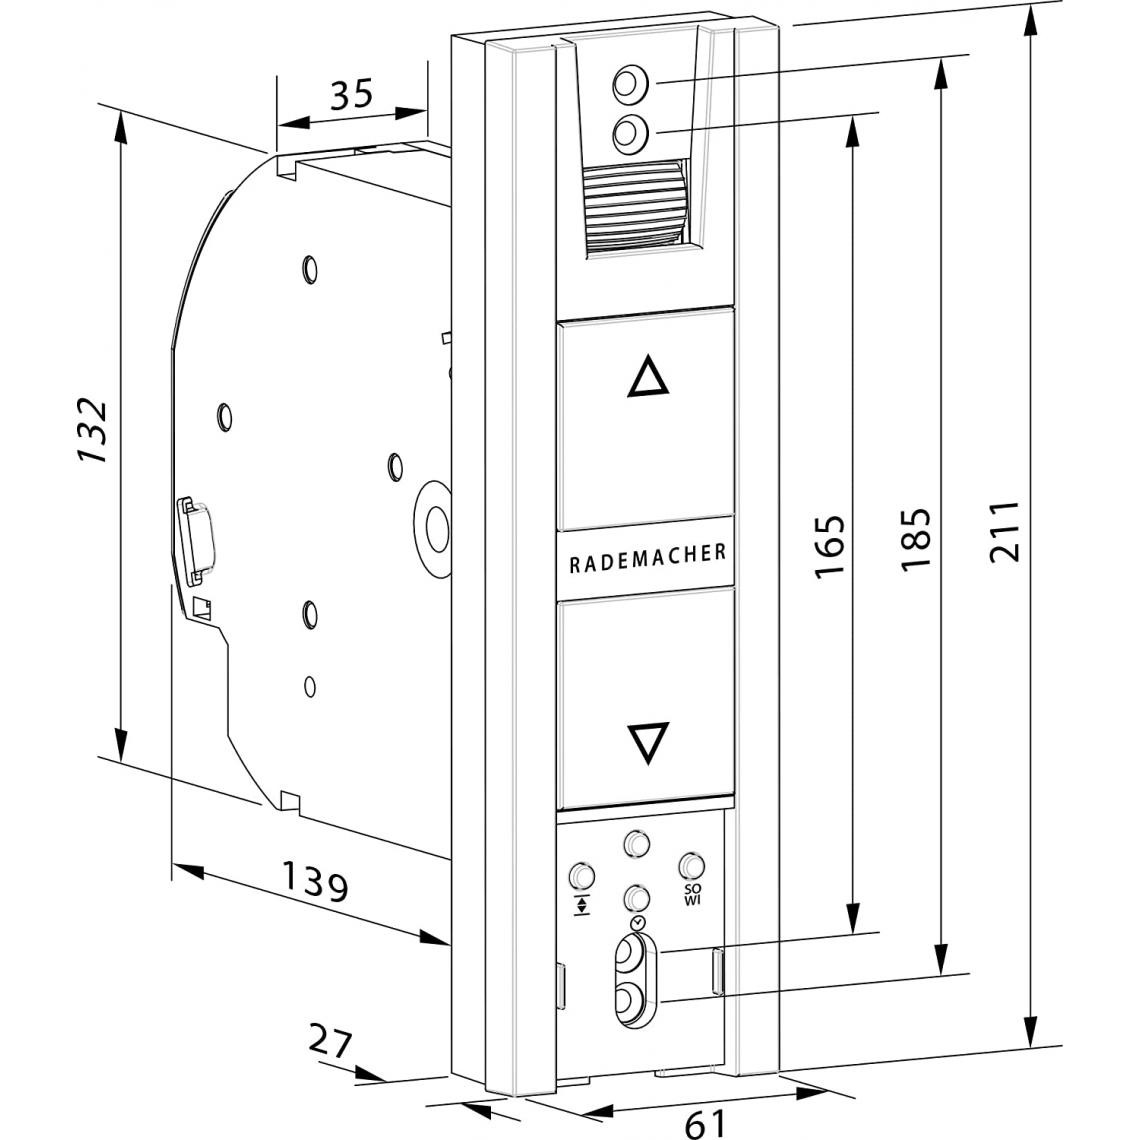 Inconnu - Rademacher RolloTron Basis 1100-UW (18234519) - Enrouleur électrique